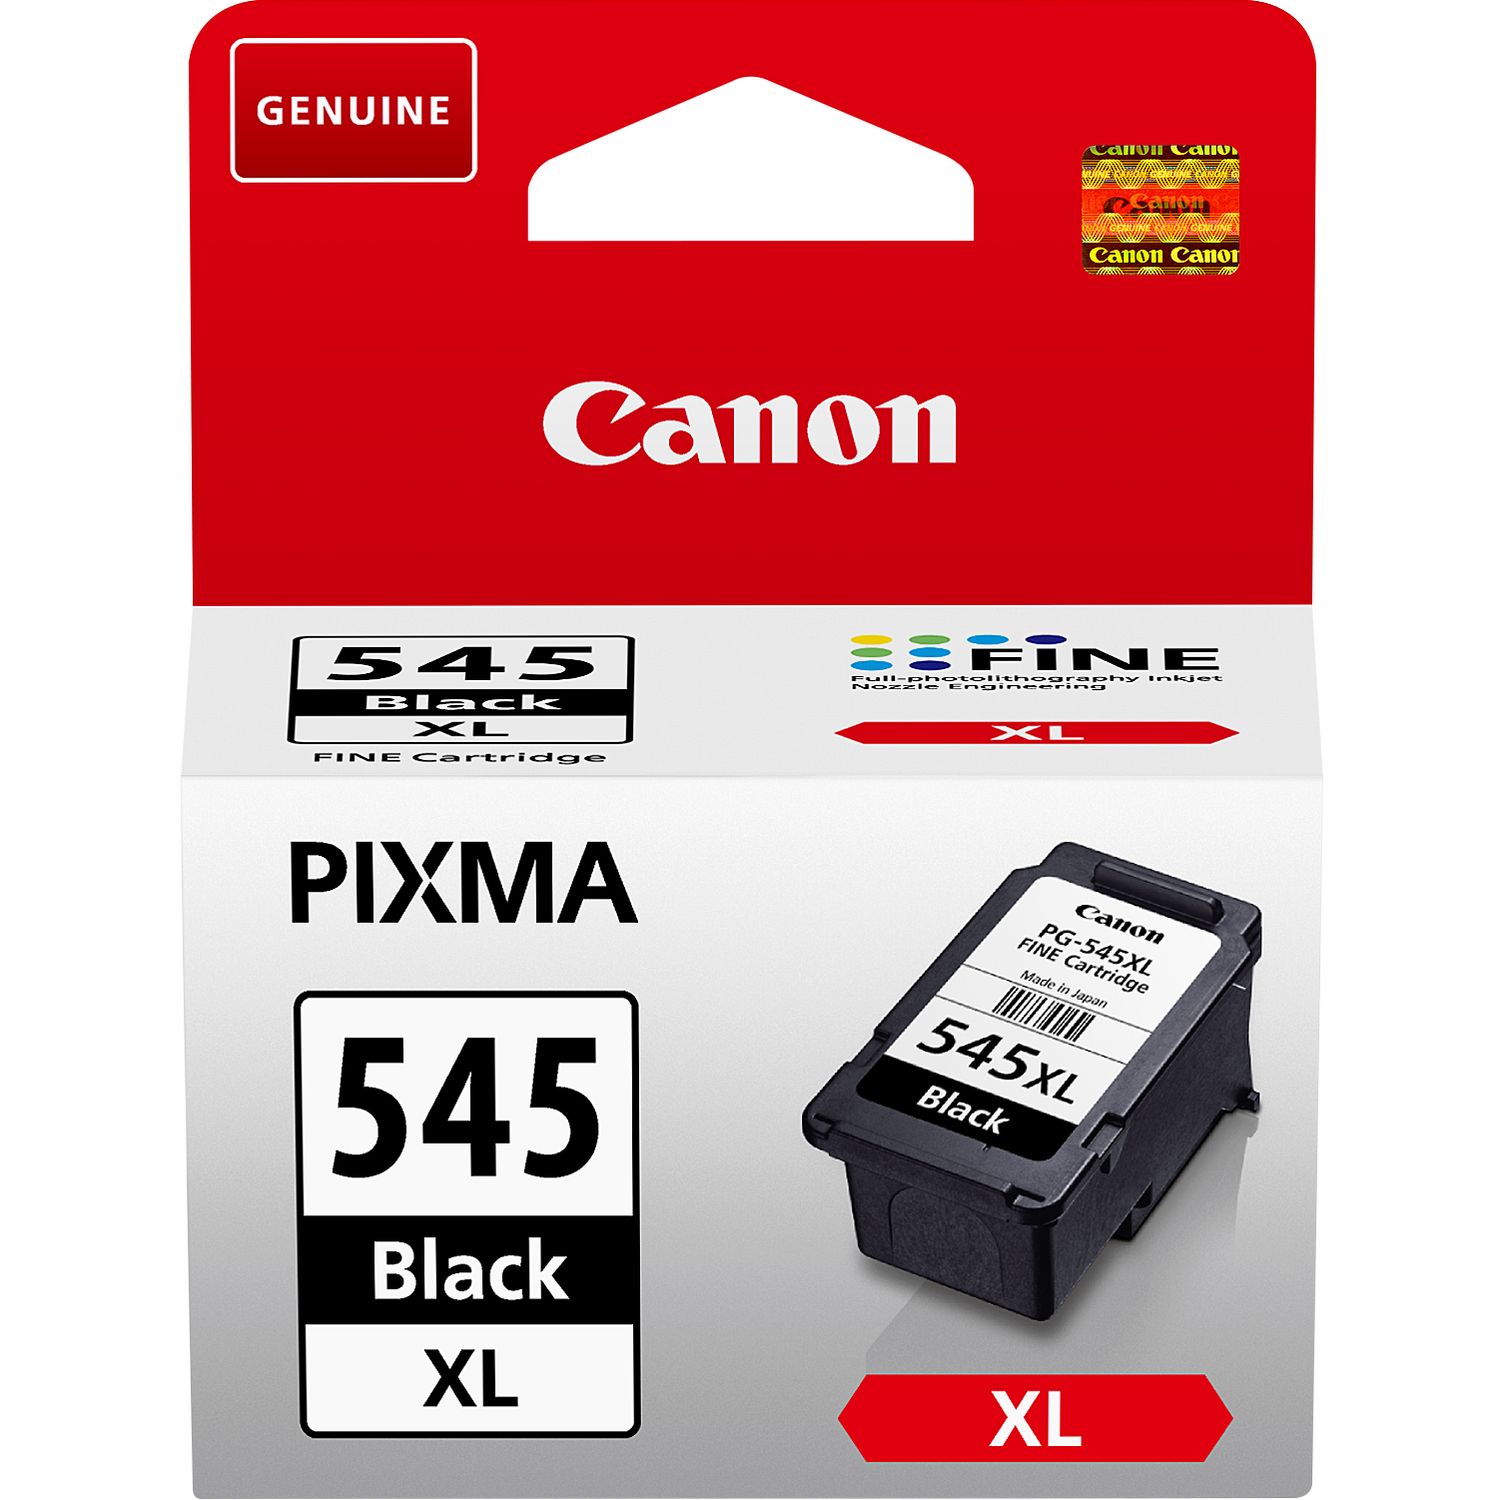 Cartouche pour imprimante Canon PIXMA TS3151 pas cher